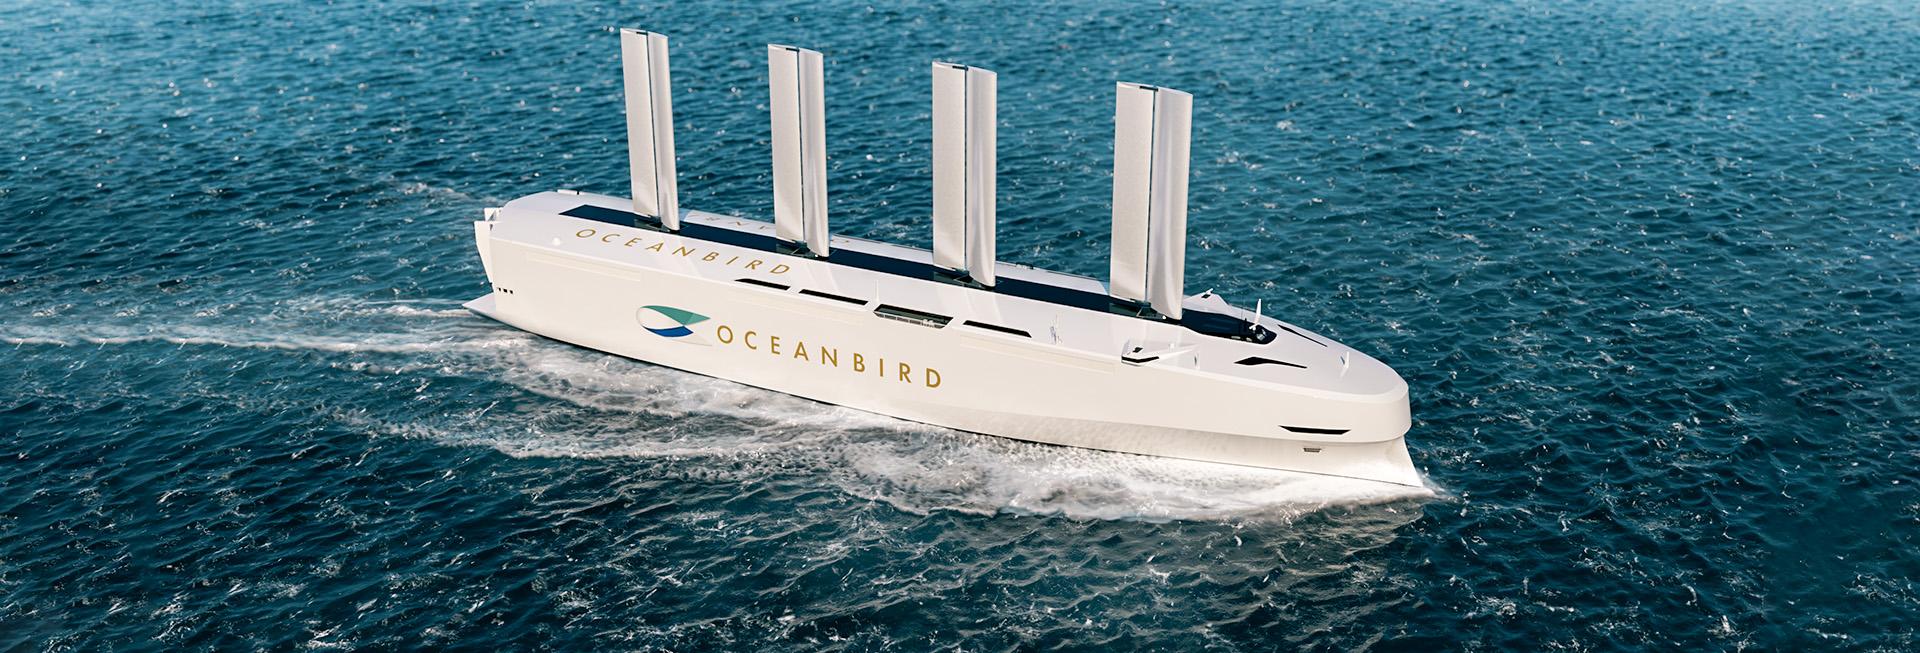 Oceanbird wing design 2022